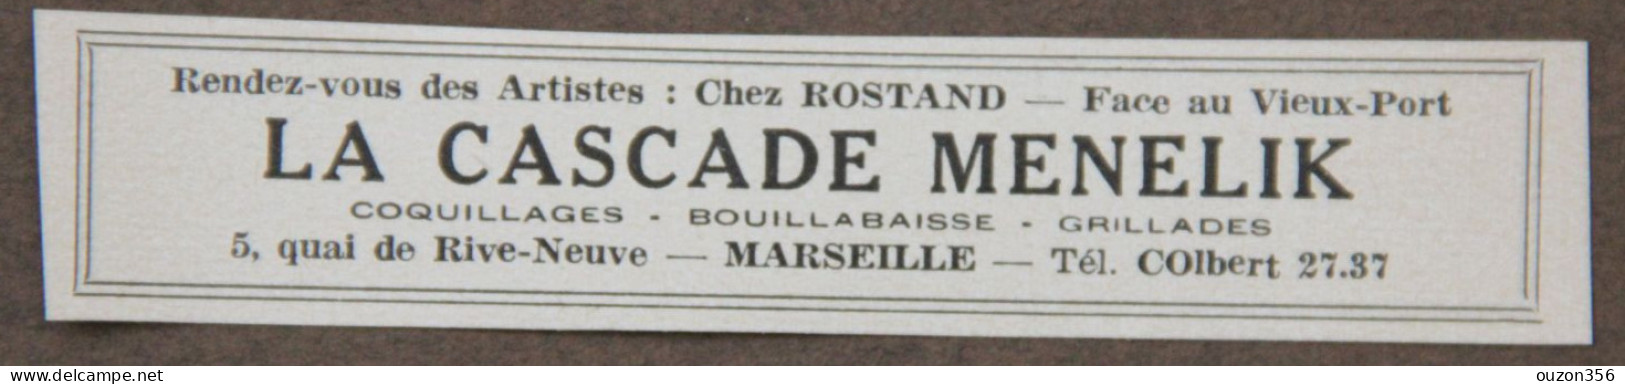 Publicité : Chez Rostand, La Cascade Menelik (Restaurant), à Marseille, 1951 - Publicités